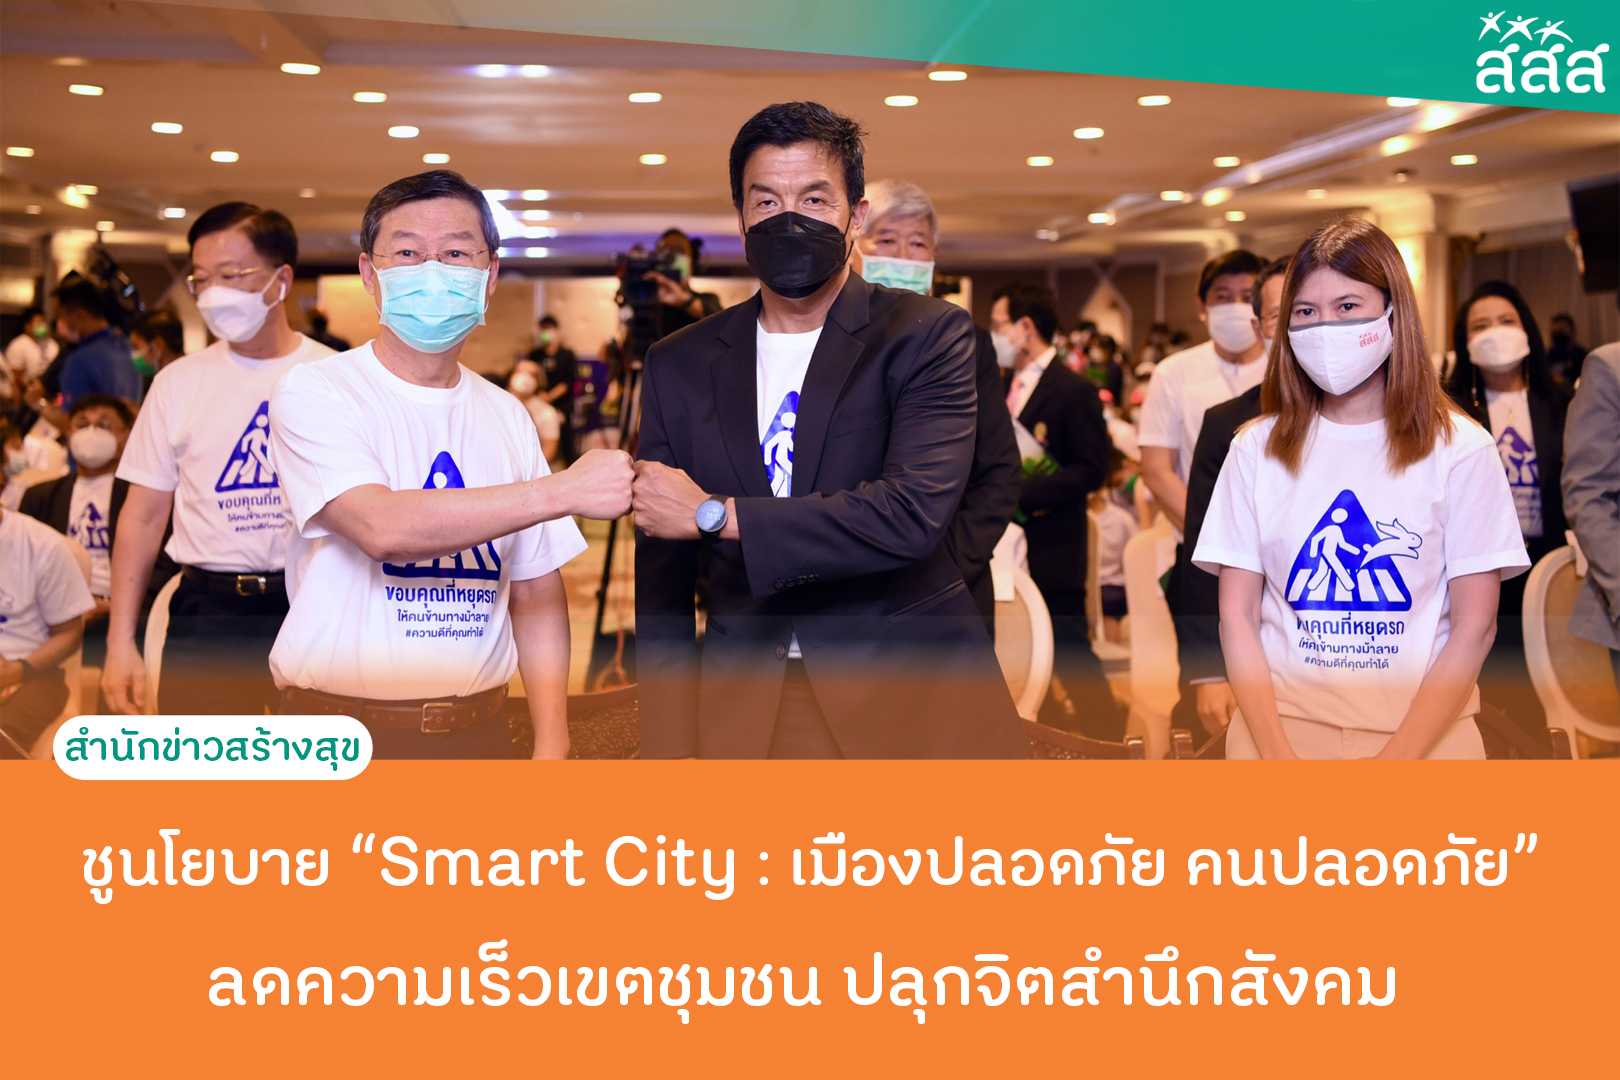 ชูนโยบาย Smart City เมืองปลอดภัย คนปลอดภัย ลดความเร็วเขตชุมชน ปลุกจิตสำนึกสังคม thaihealth